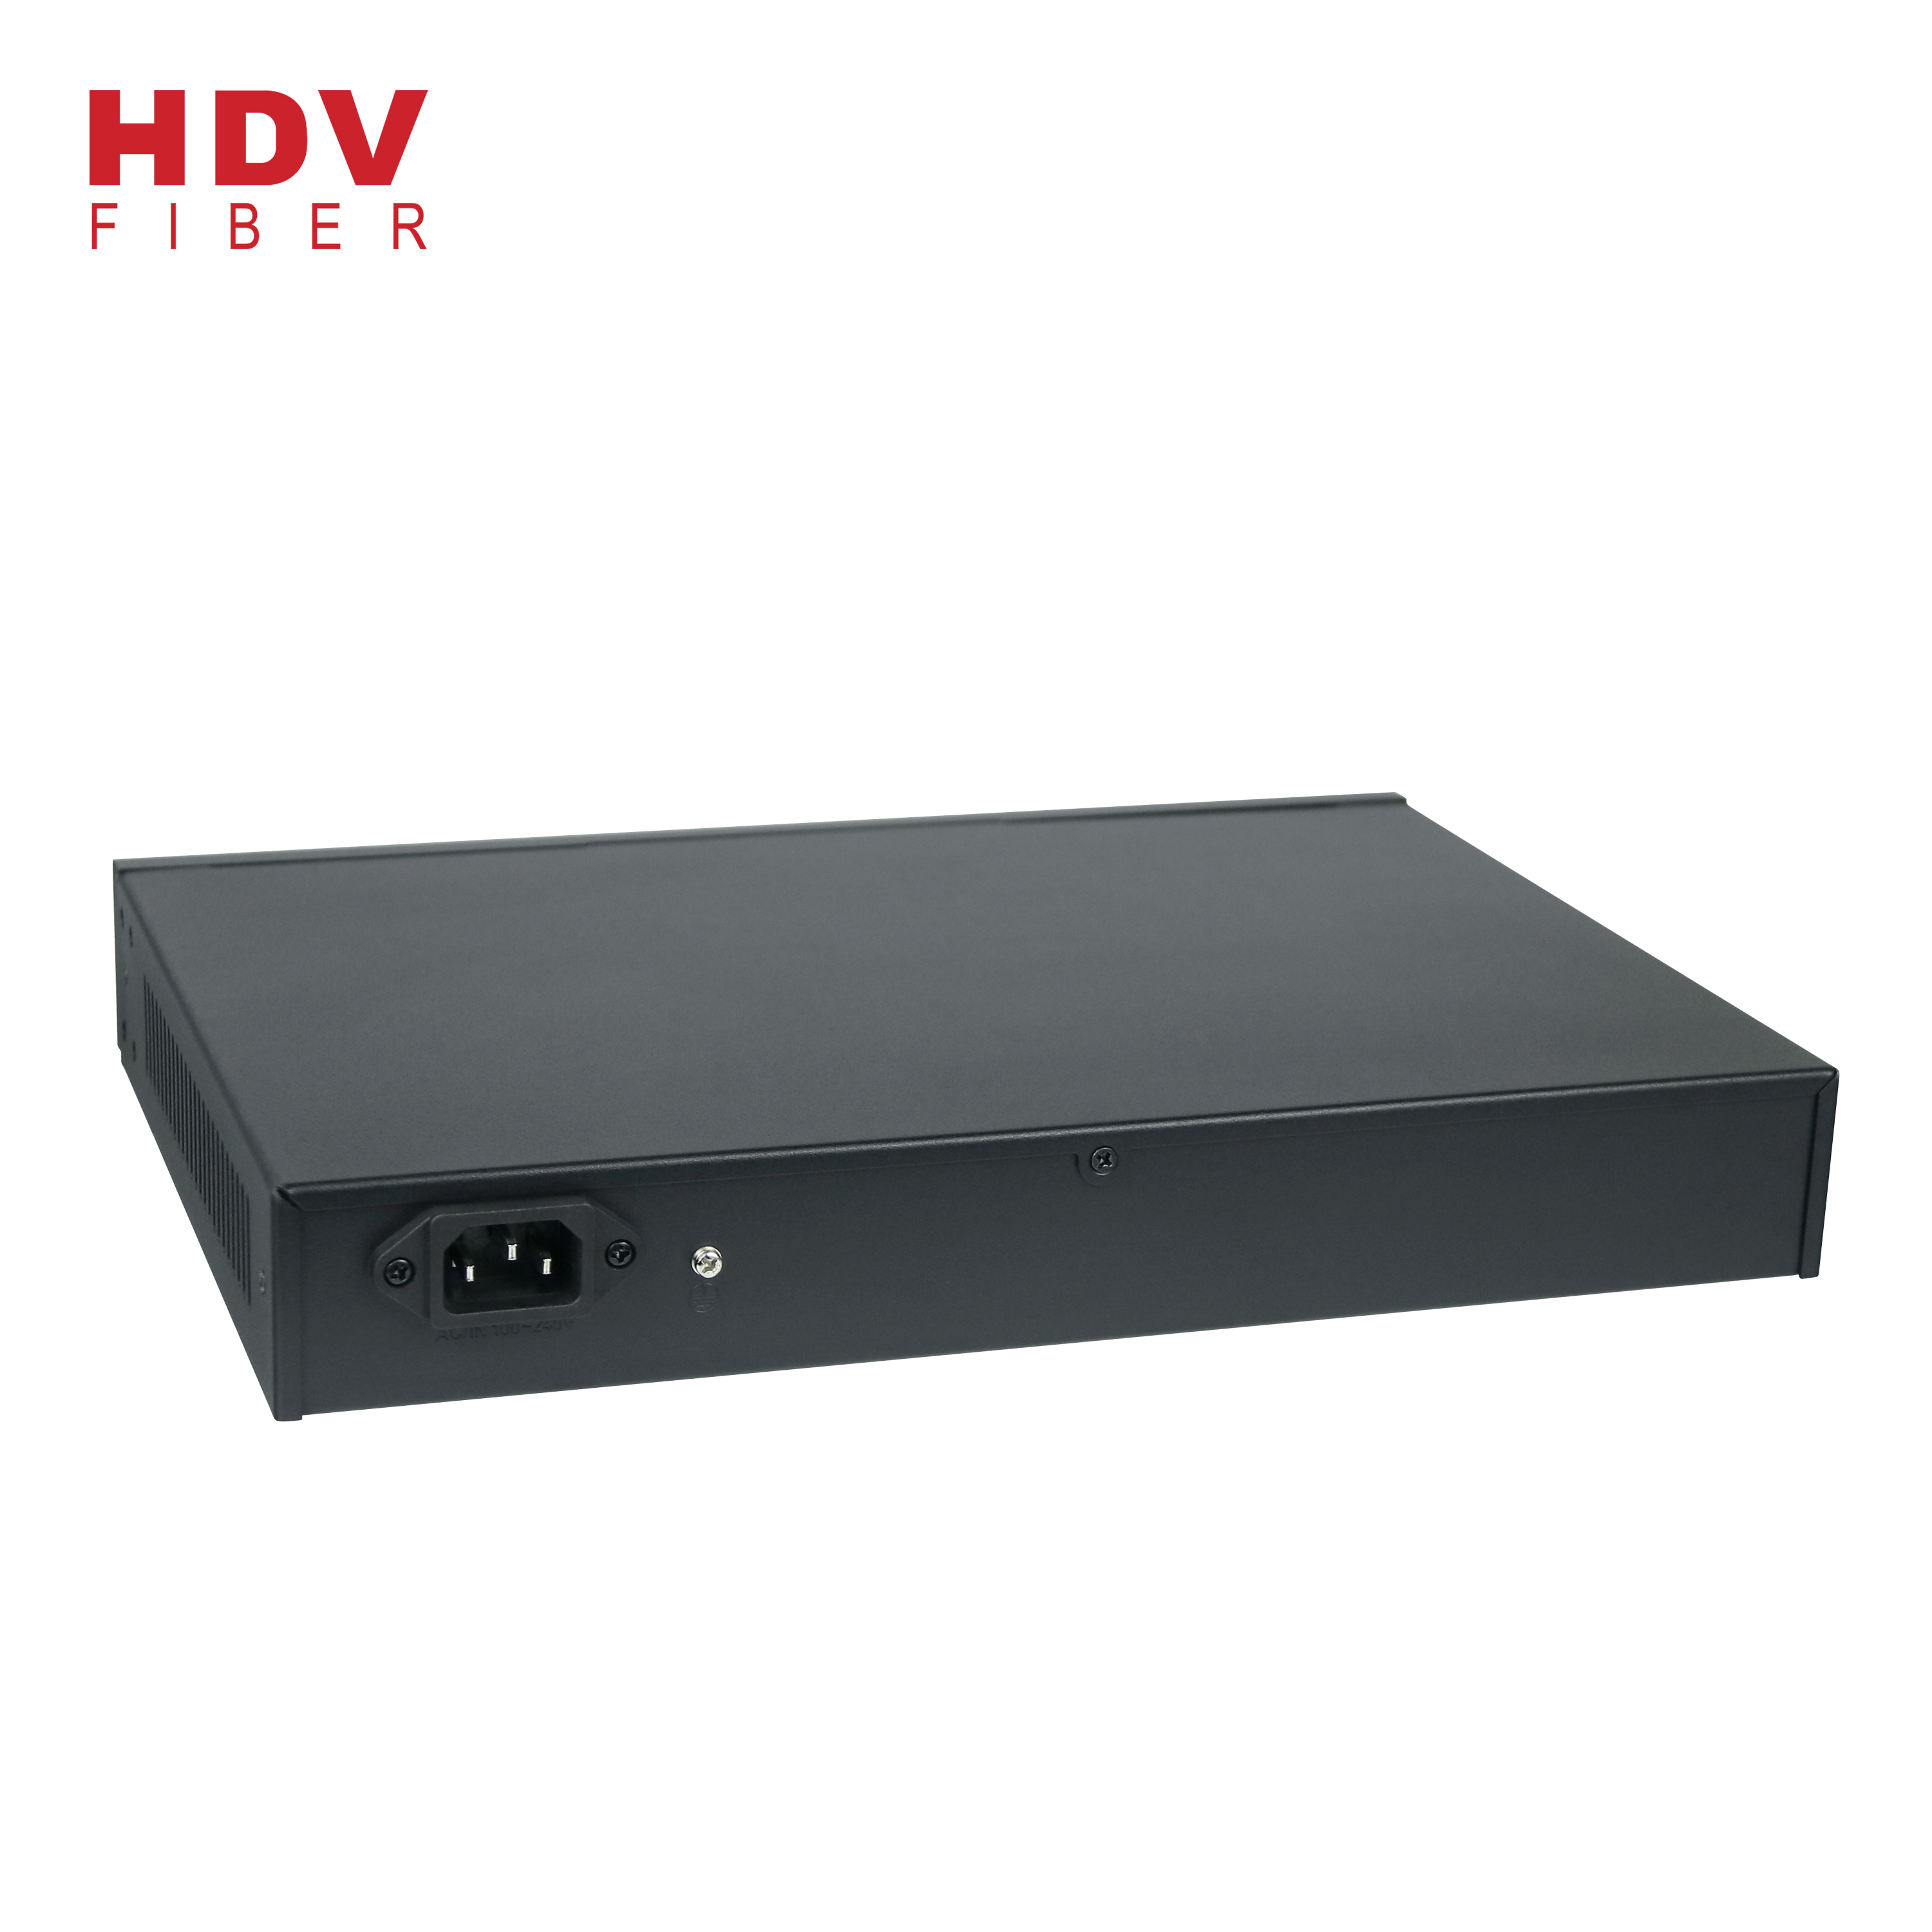 100% Original Transceiver Optical Fiber - China Manufacturer Factory 16GE POE+2GE UP Link+1G SFP Gigabit POE Network Switch – HDV